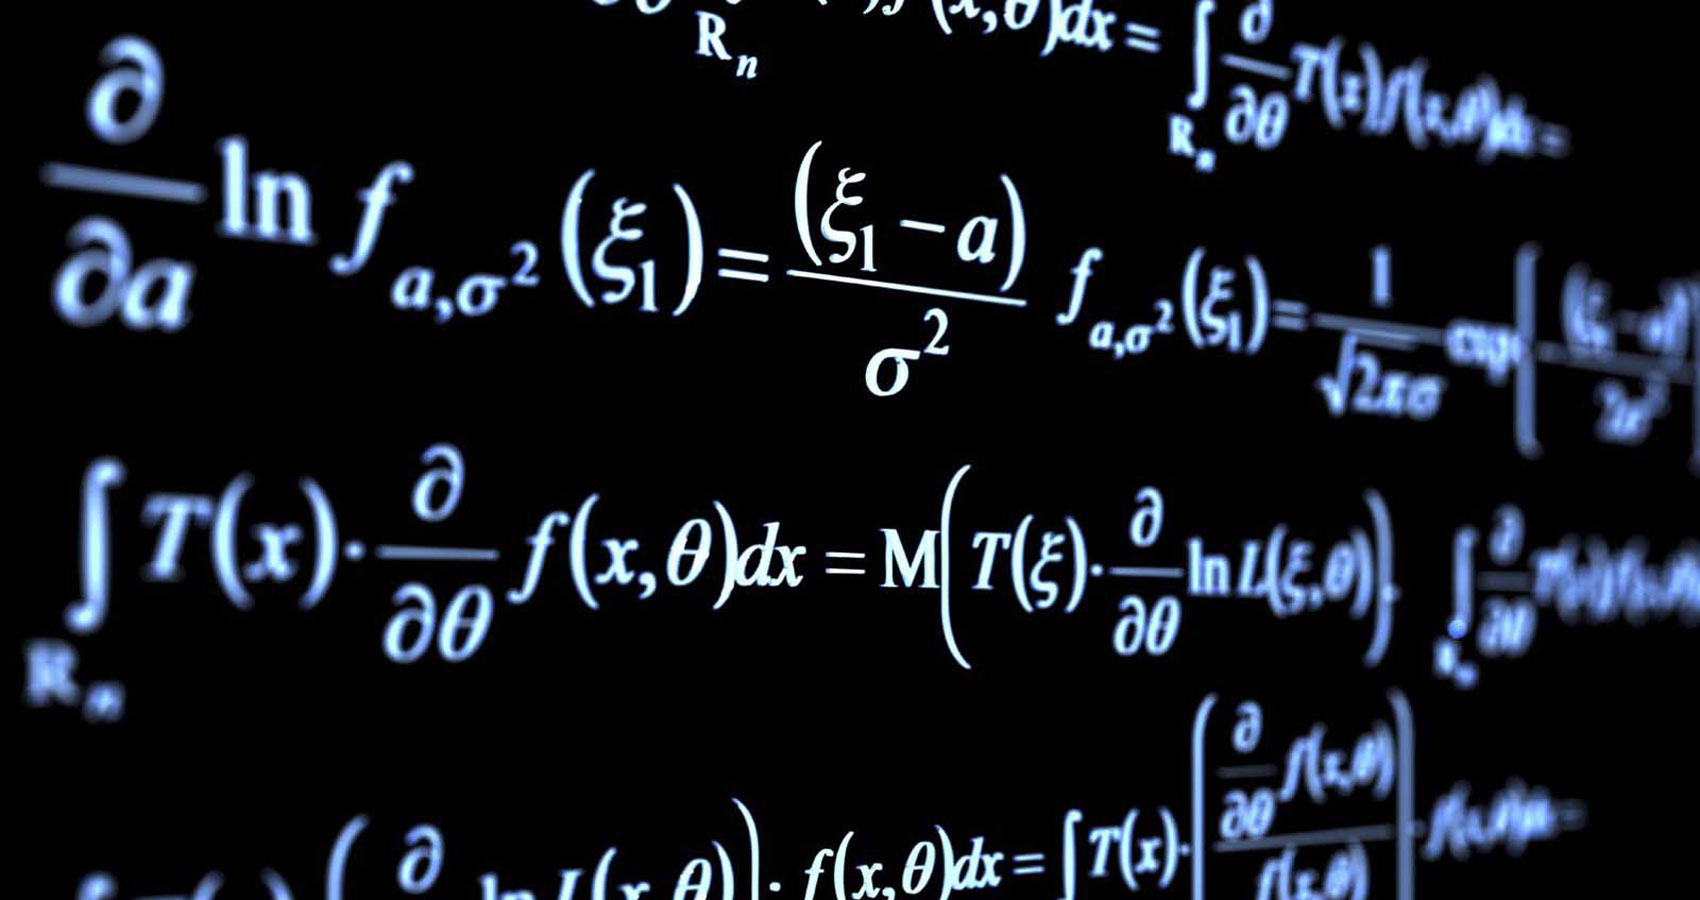 Maths written by Garima Majahan at Spillwords.com